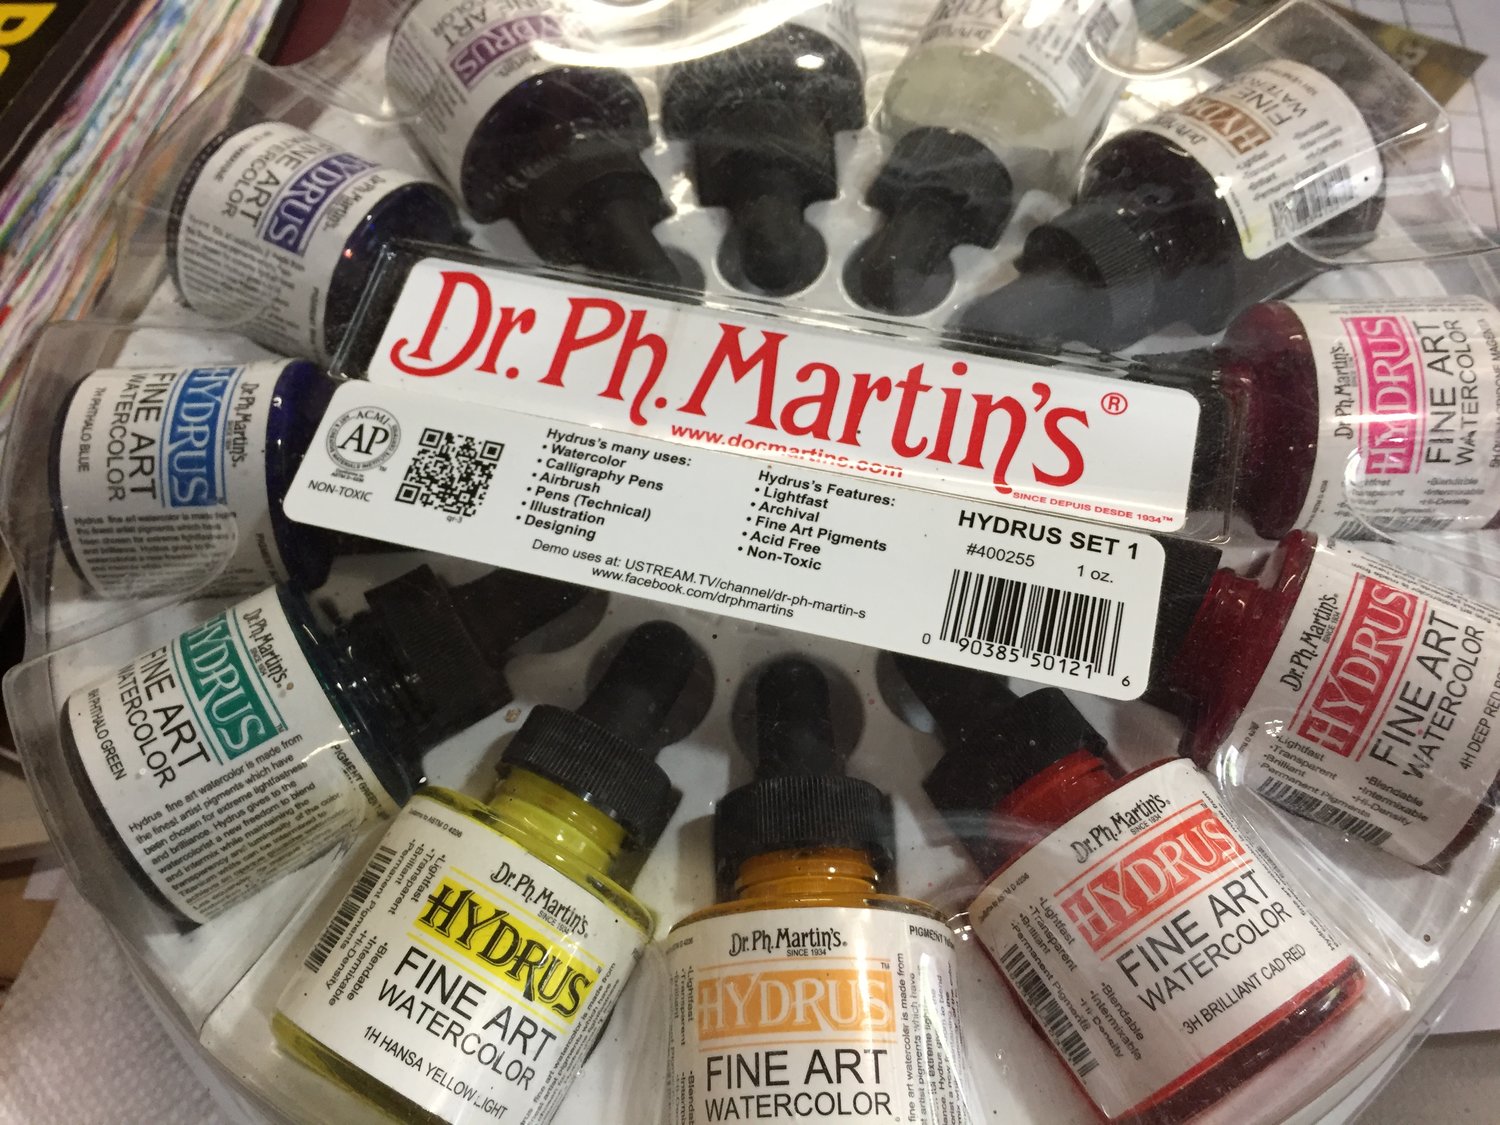 Materials Monday: Dr. Ph. Martin's Hydrus Fine Art Watercolor